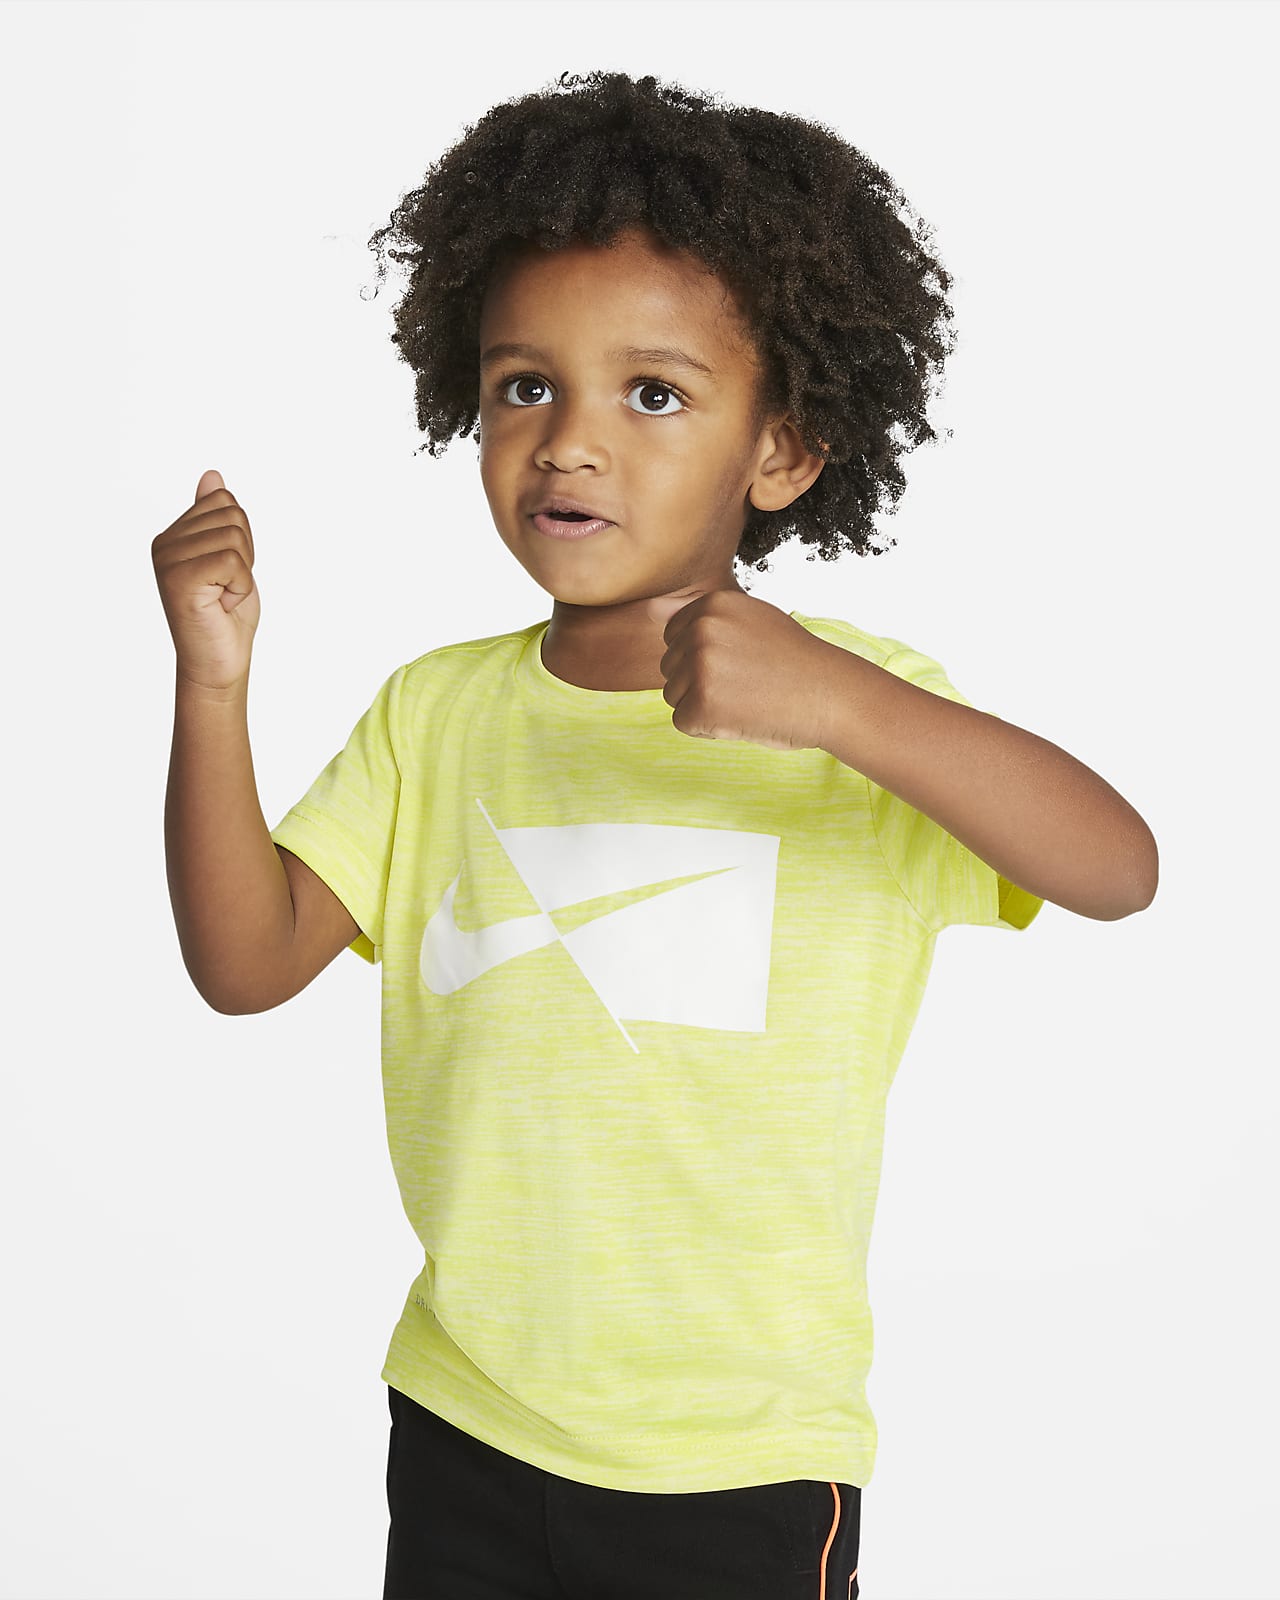 Nike Dri-FIT Toddler T-Shirt